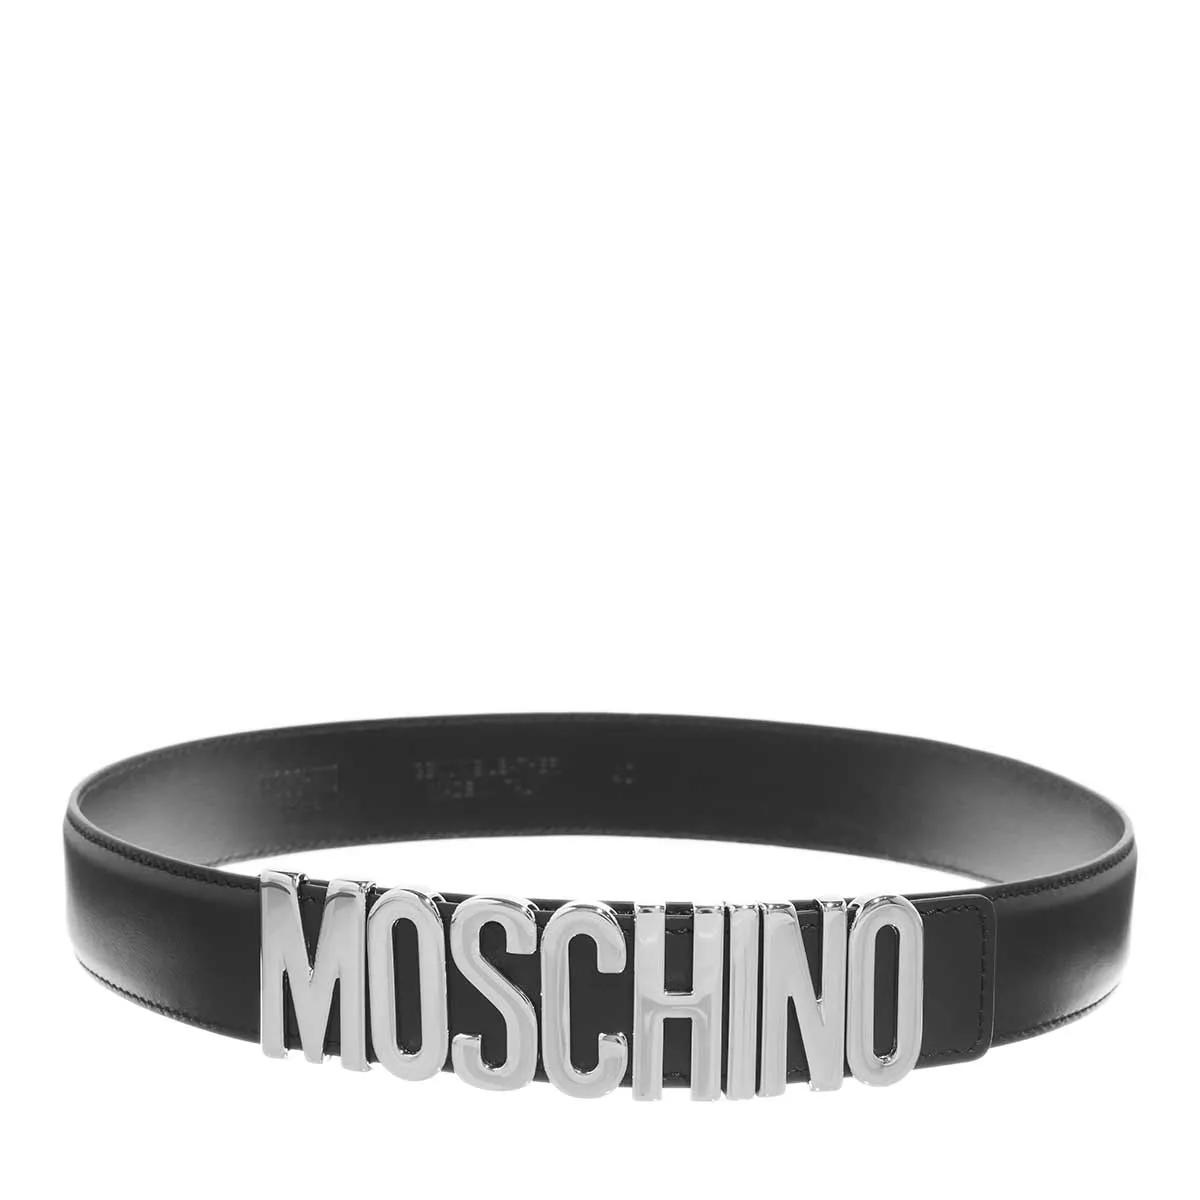 Moschino Gürtel - Belt - Gr. 80 - in Schwarz - für Damen von Moschino